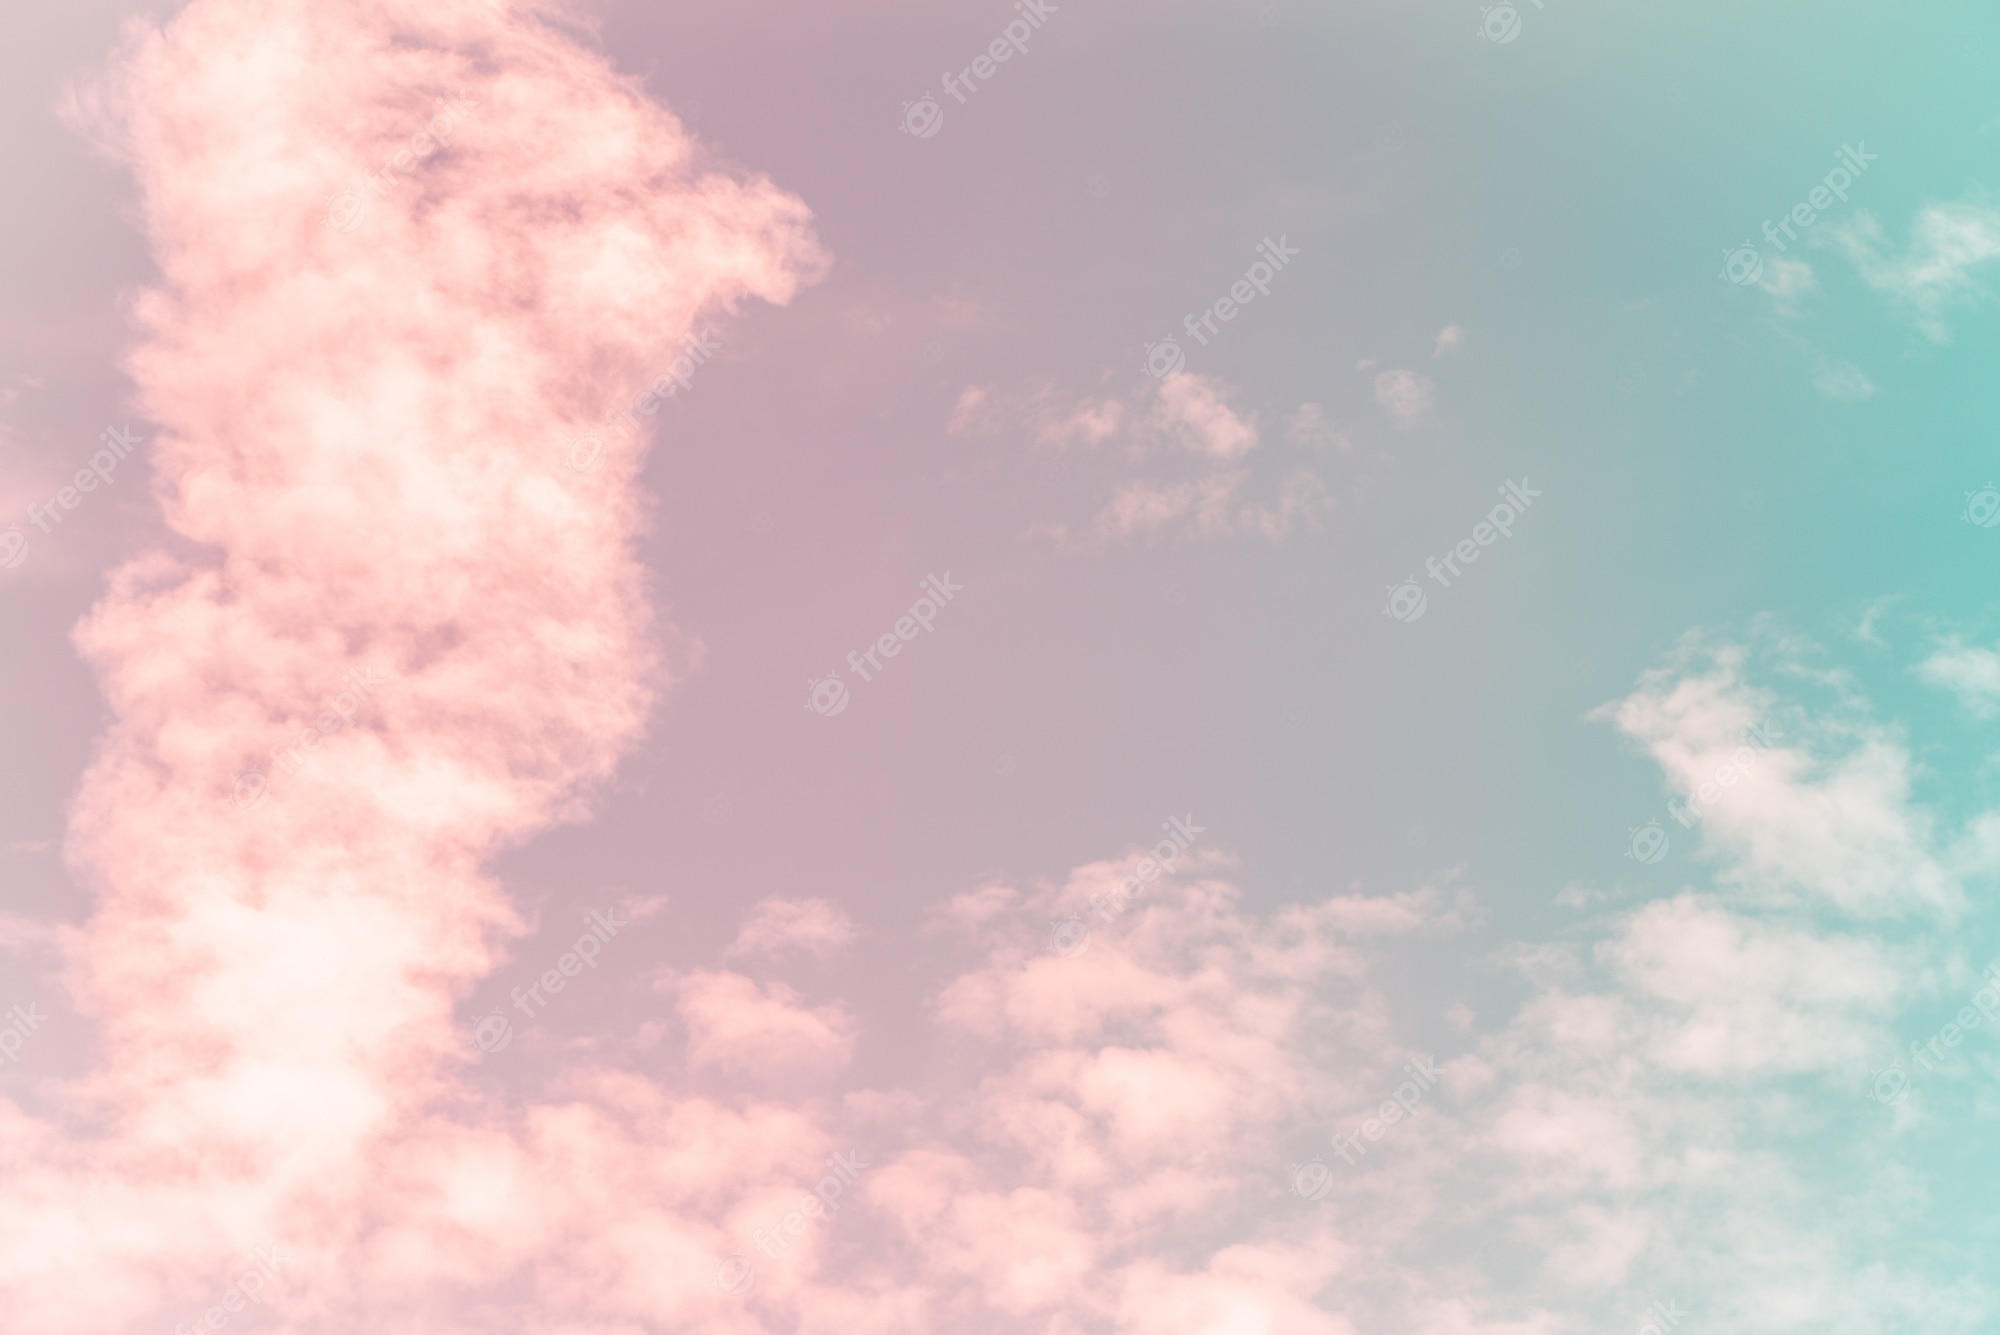 Aesthetic Cloud Wallpaper Image